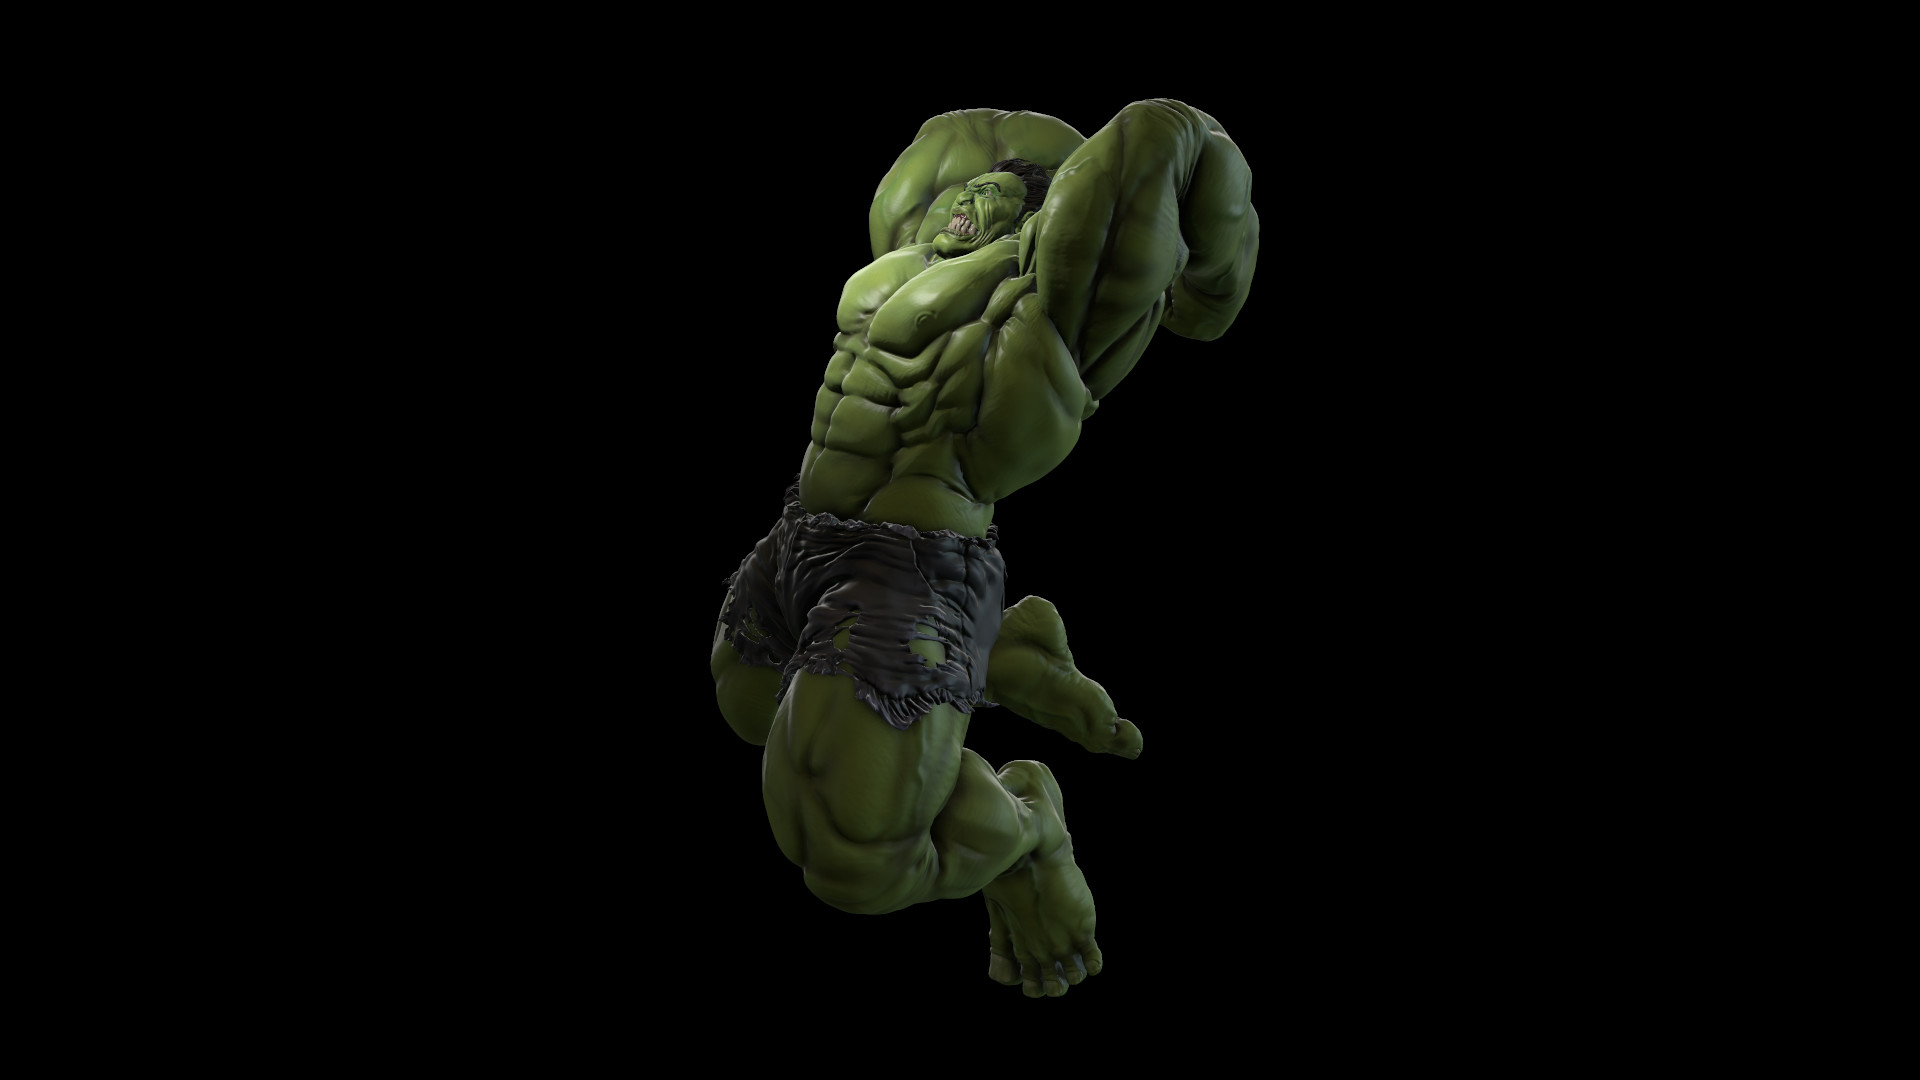 Hulk Smash.